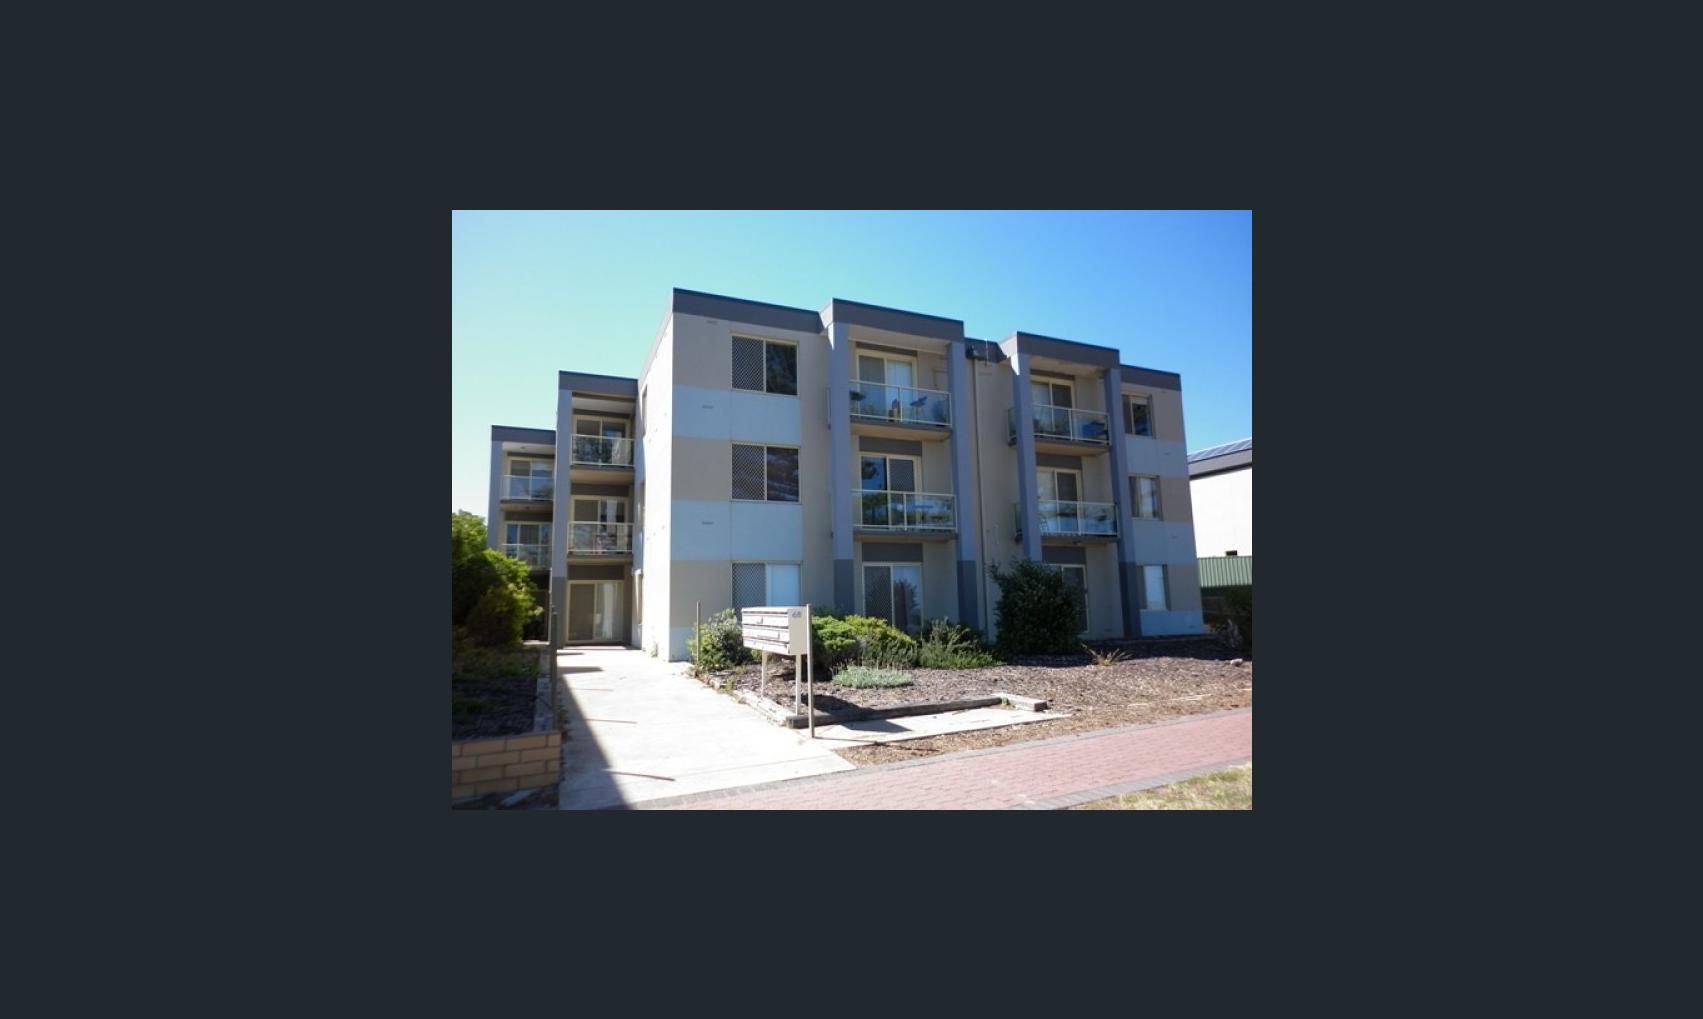 2 bedrooms Apartment / Unit / Flat in 11/46 Esplanade SEMAPHORE SA, 5019